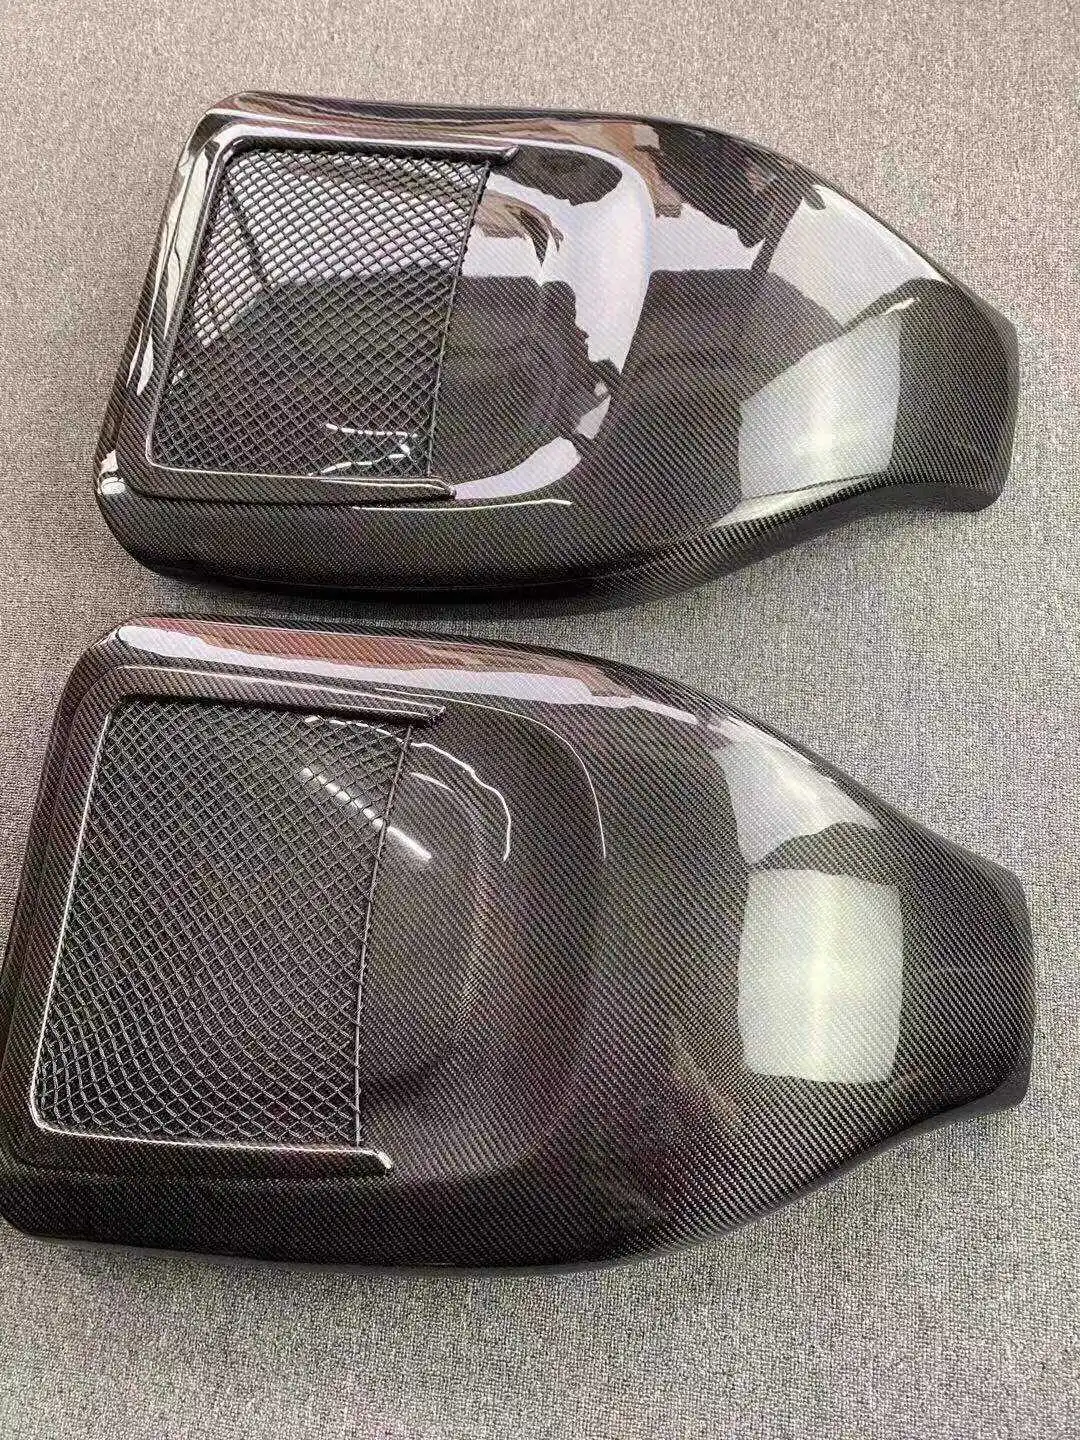 אמיתי 100% סיבי פחמן המושב עבור אאודי S4 S5 RS4 RS5 2015 2016 2017 2018 2019 2020 2021 הרכב מושב אחורי מגיני - 4